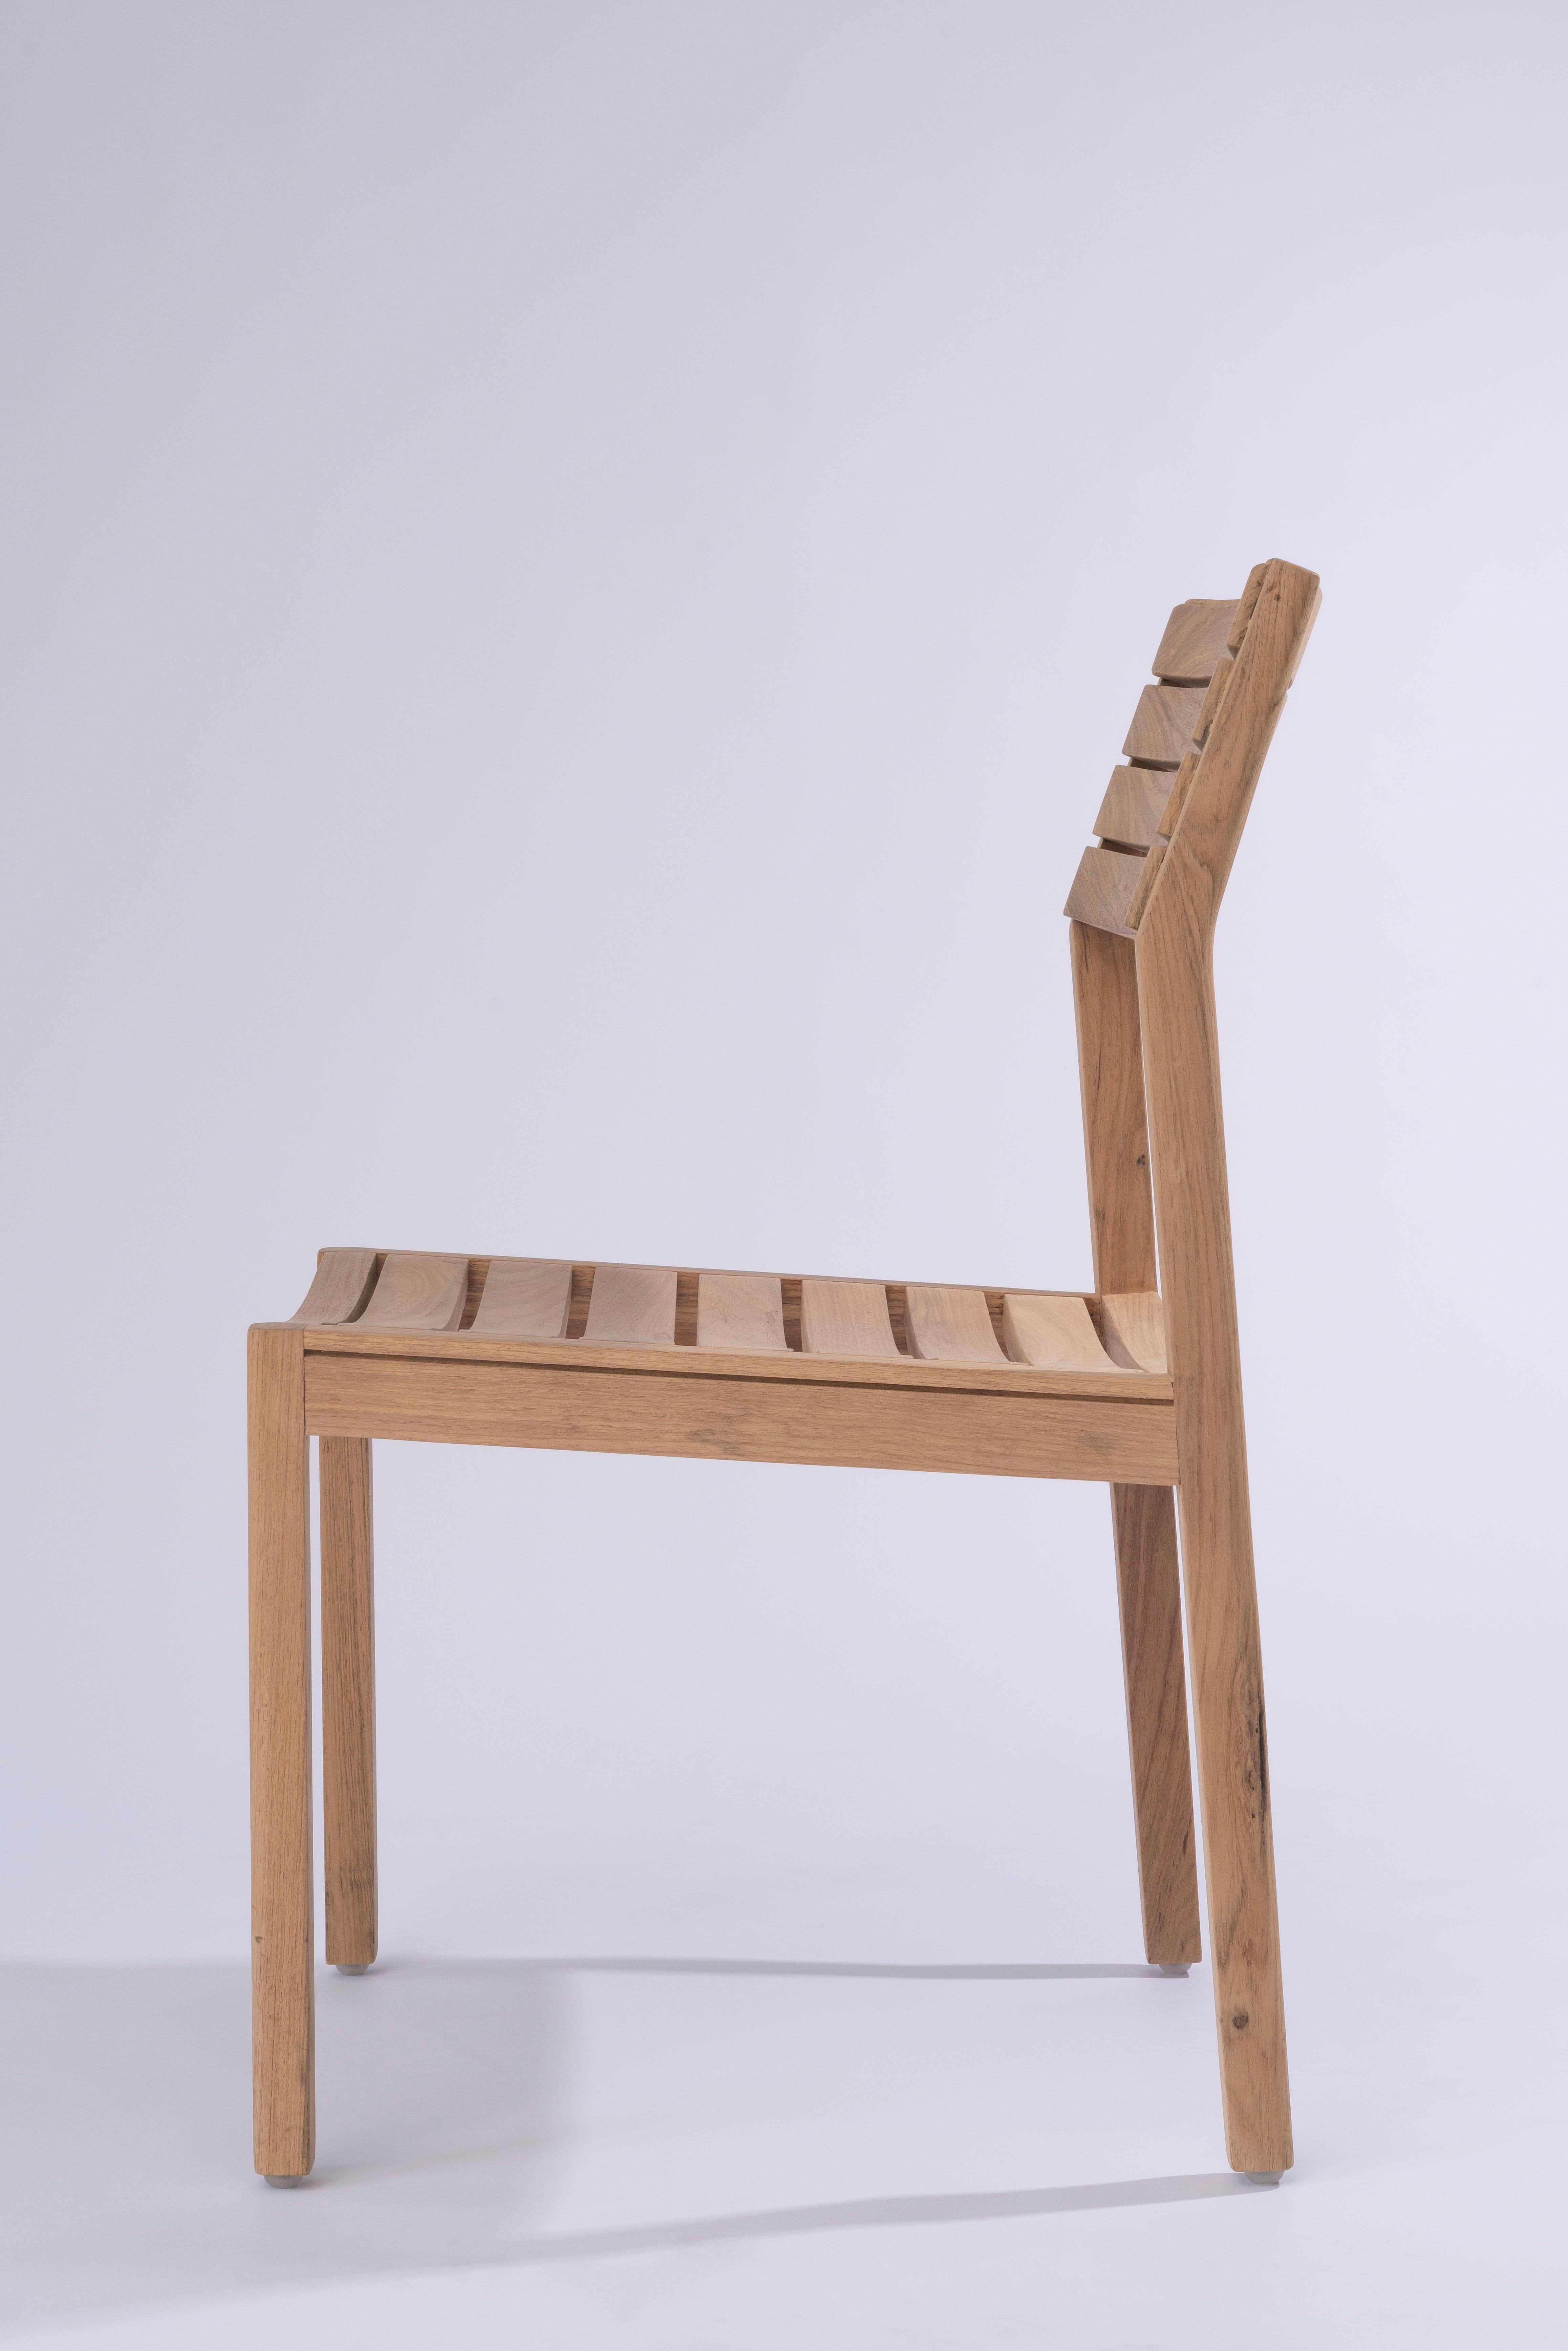 wooden chair slats